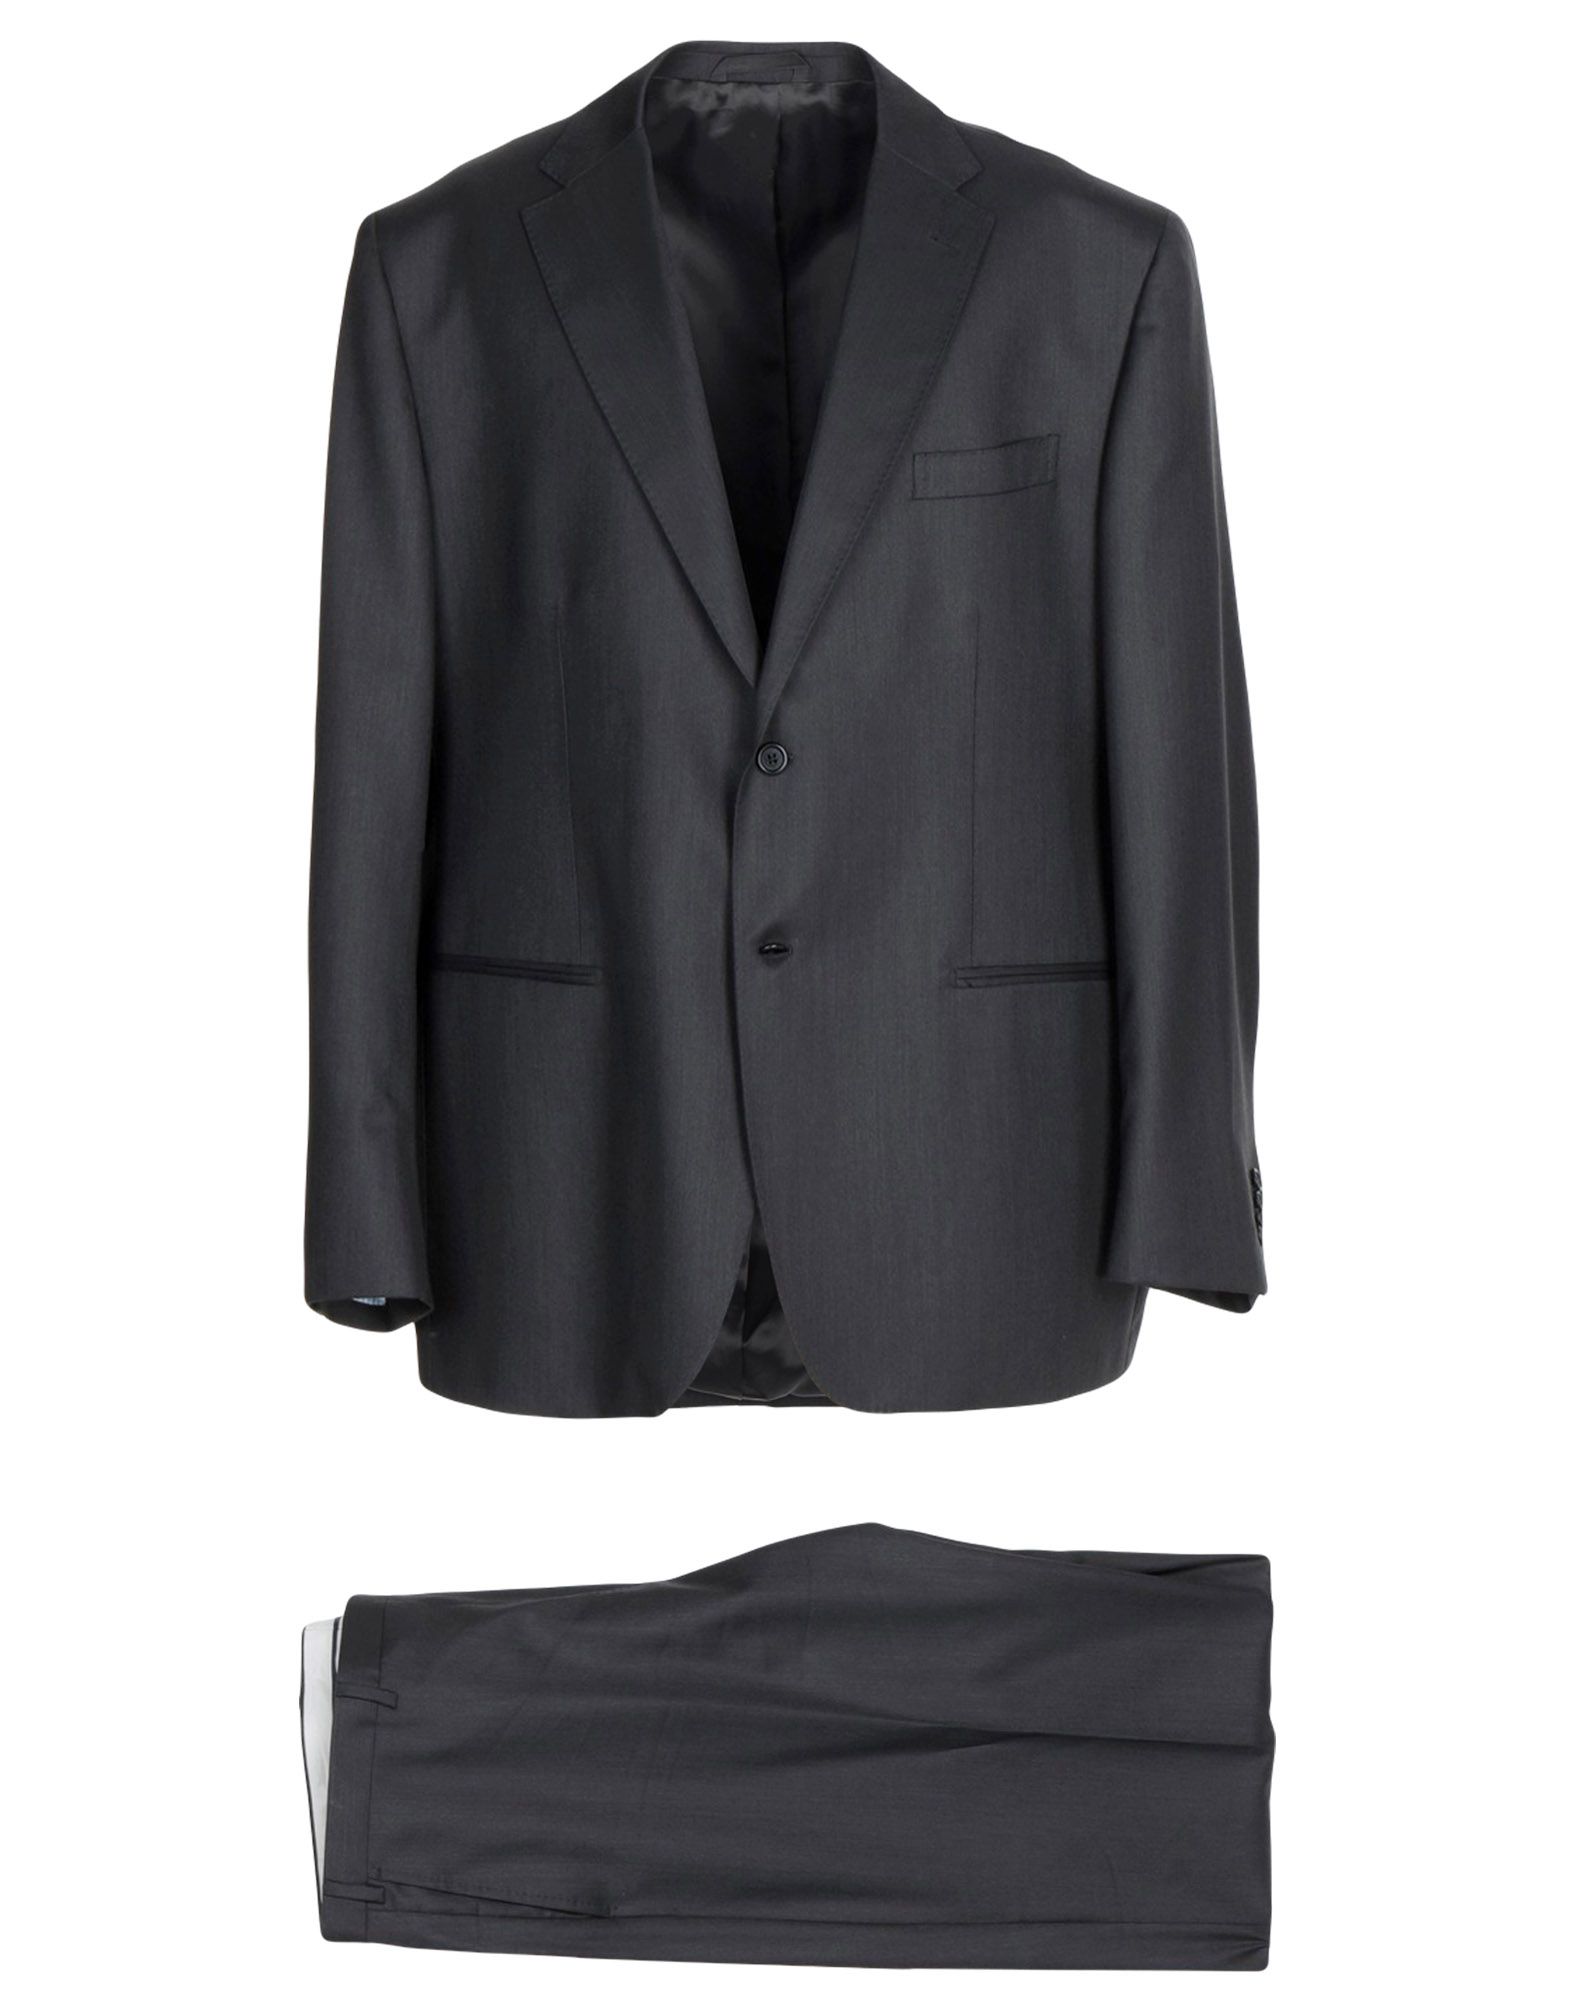 《送料無料》RIVIERA Milano メンズ スーツ スチールグレー 60 スーパー150 ウール 100%